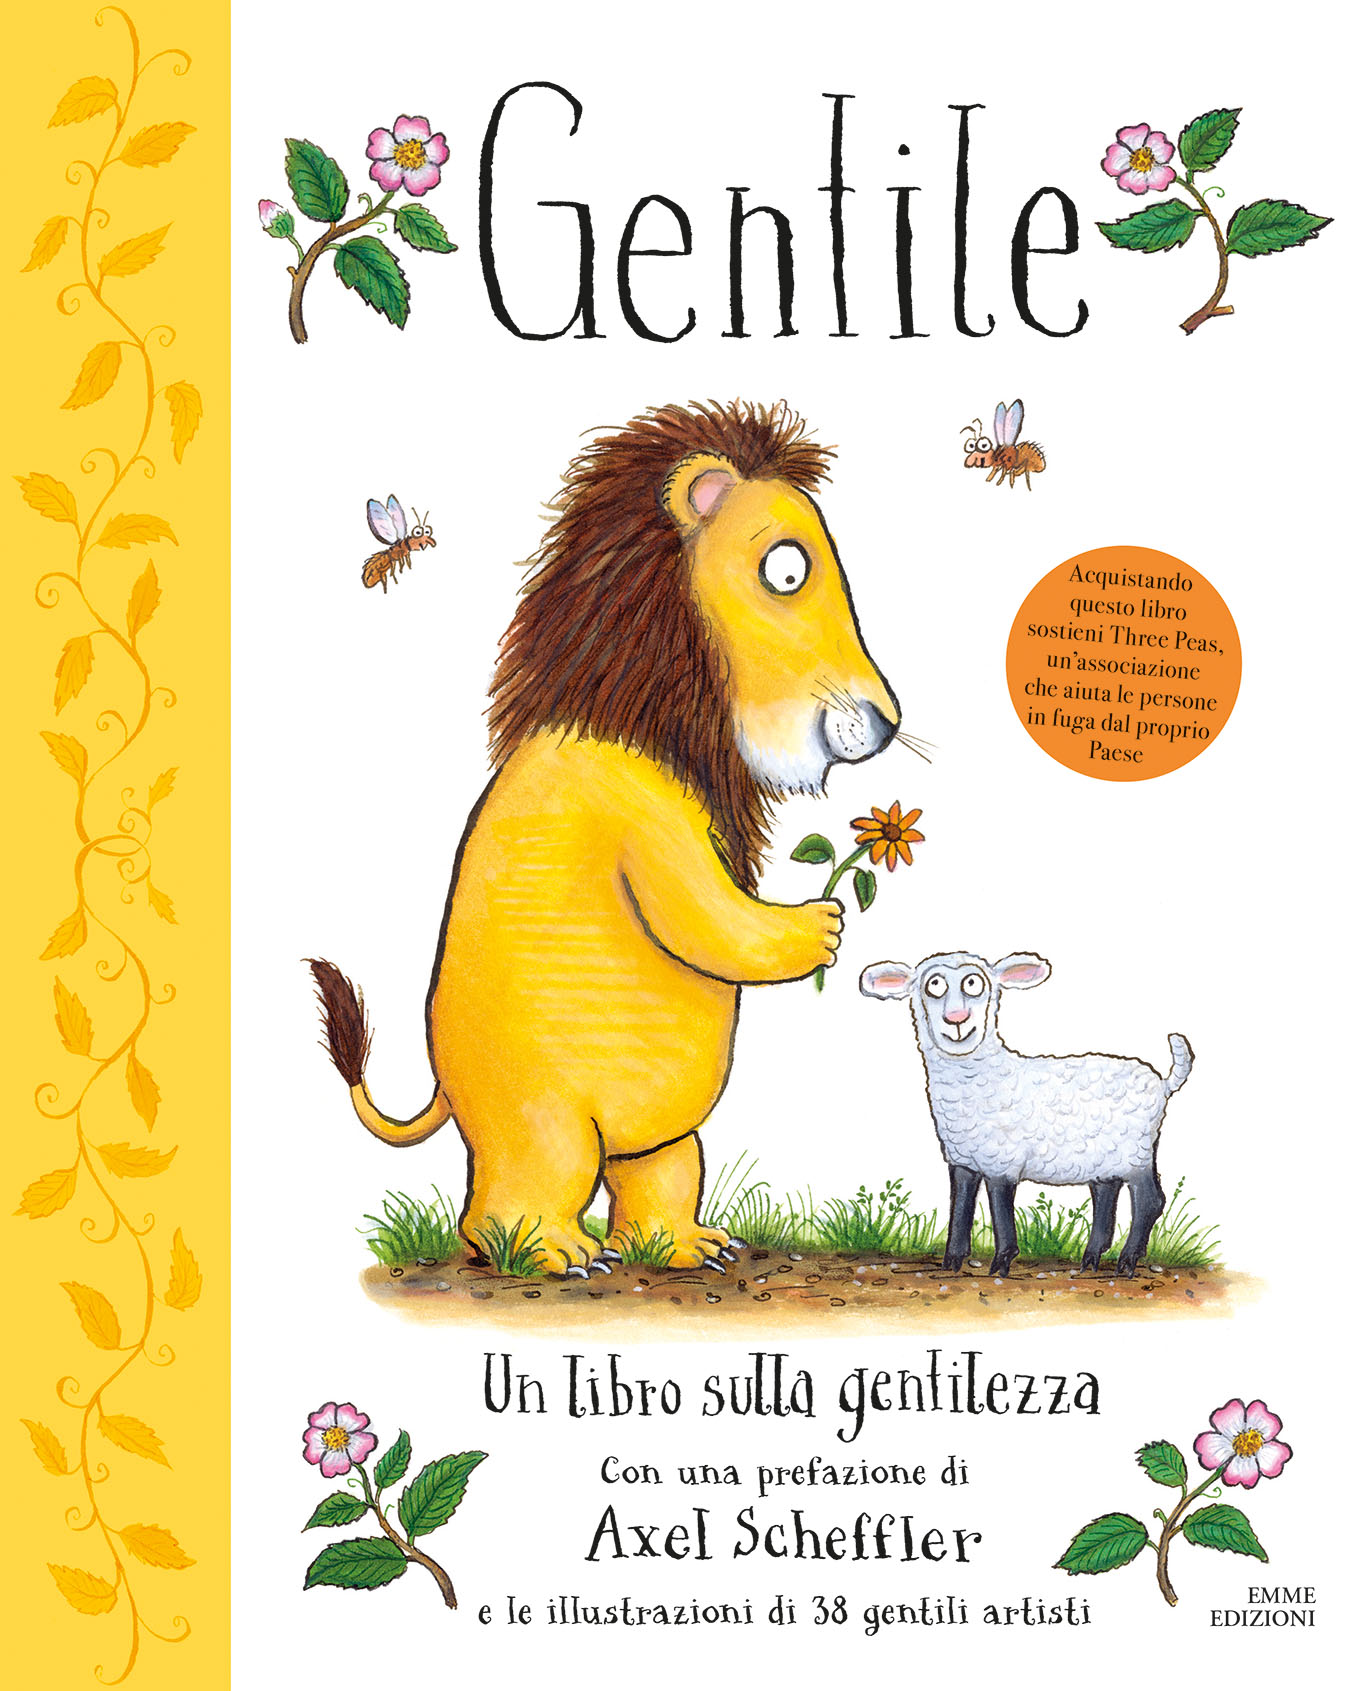 Gentile - Un libro sulla gentilezza - Green/AA.VV.